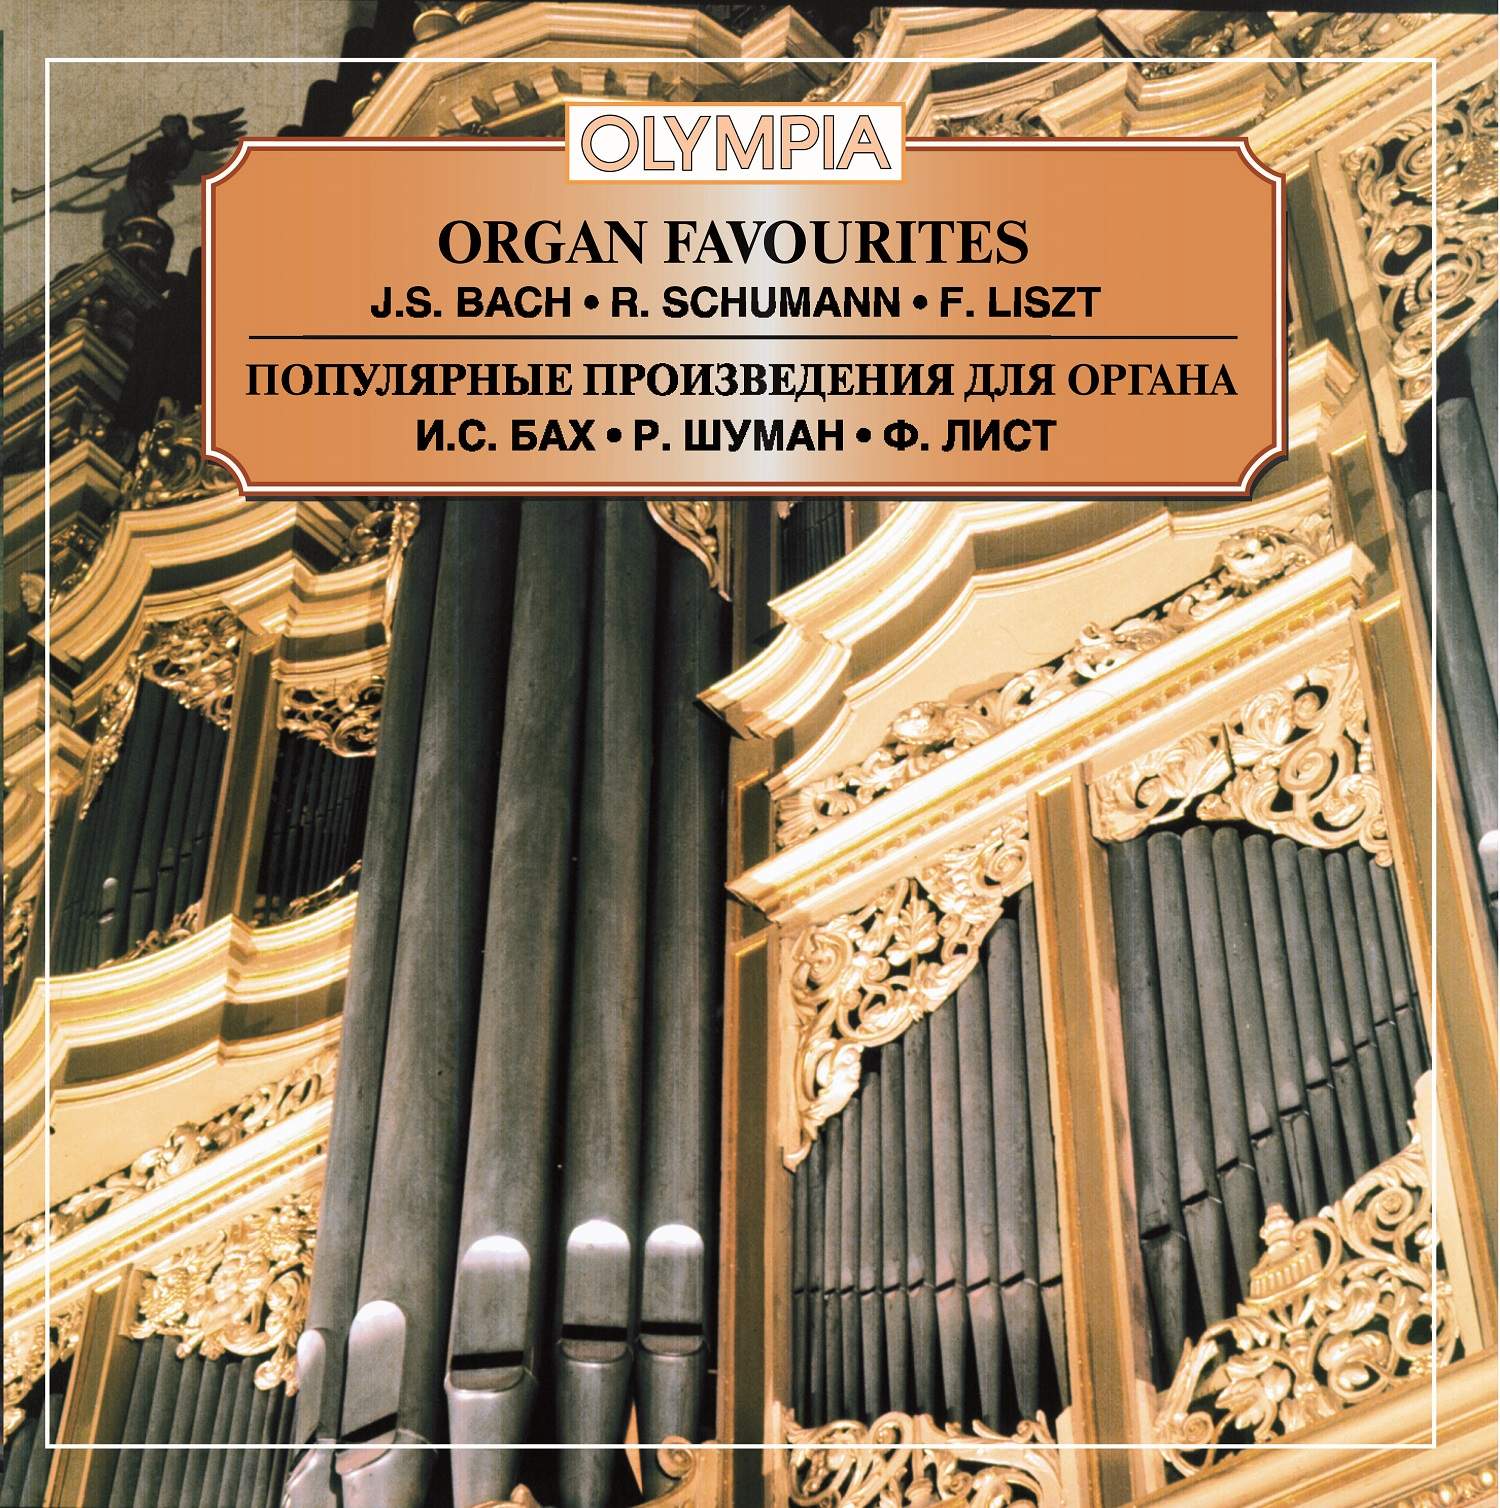 Бах произведения для оркестра. Произведения для органа. Органные произведения Баха. Известные произведения для органа Баха. Самое известное Органное произведение.